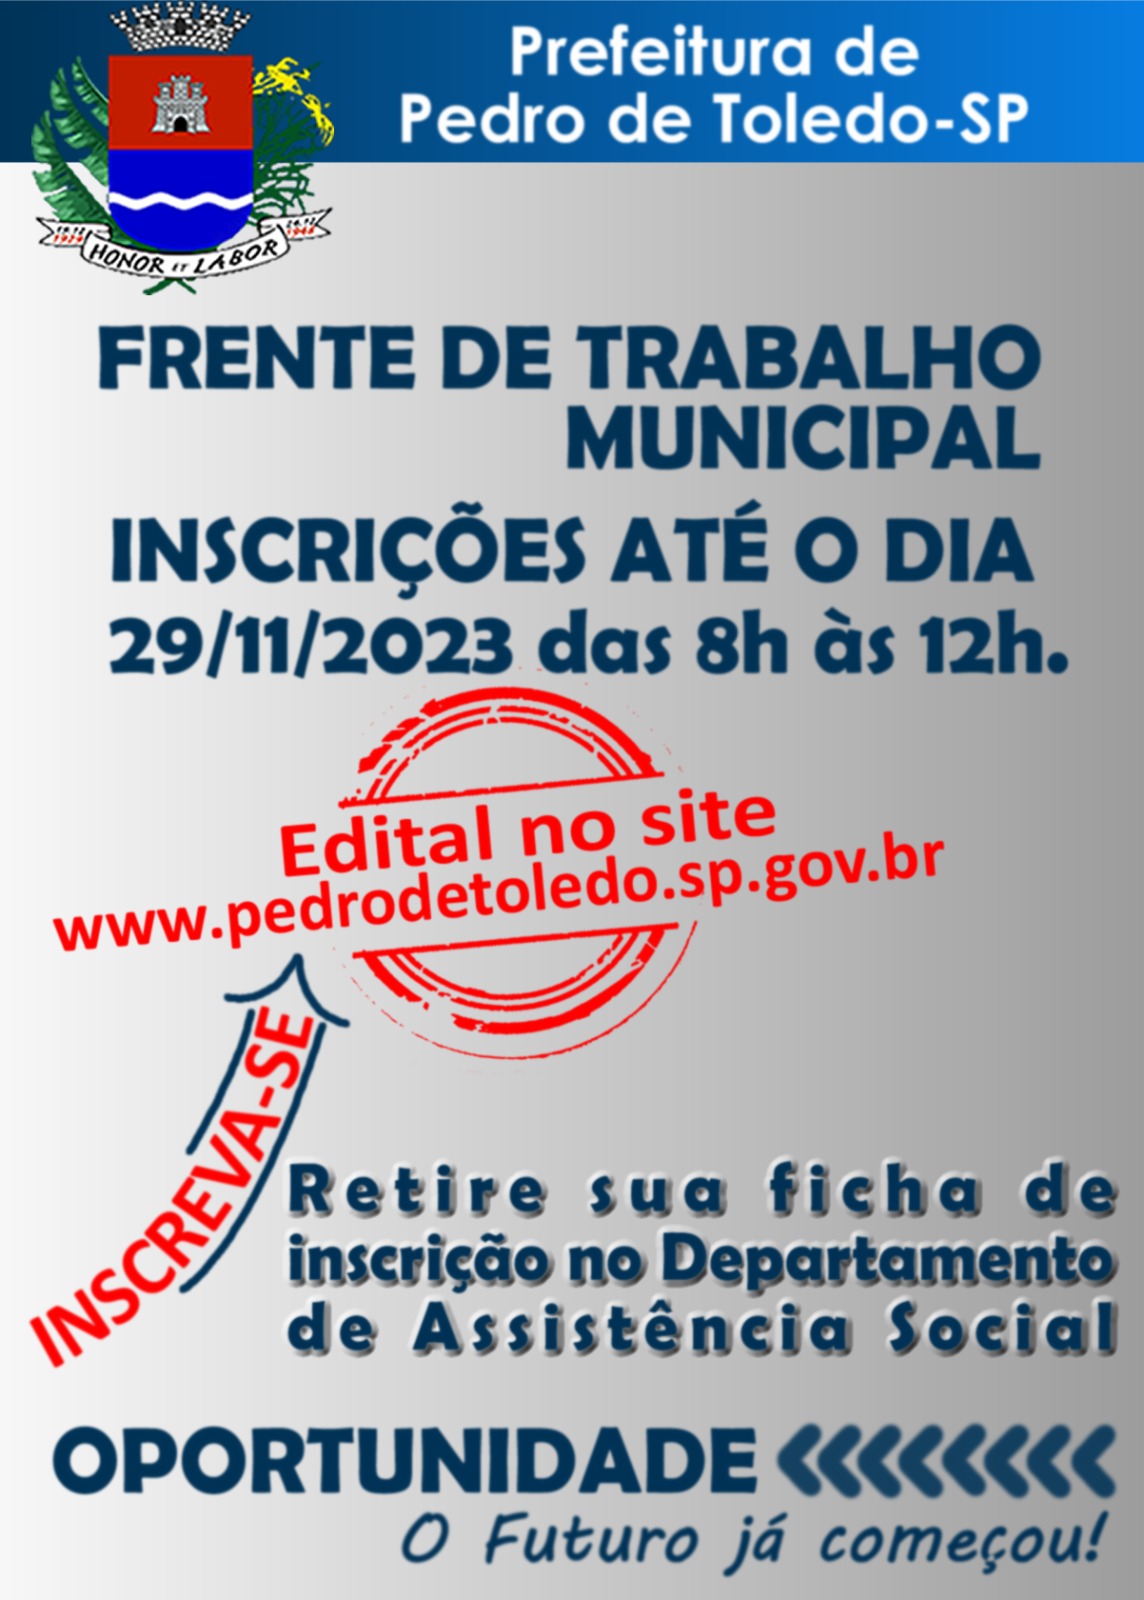 FRENTE DE TRABALHO MUNICIPAL - PEDRO DE TOLEDO